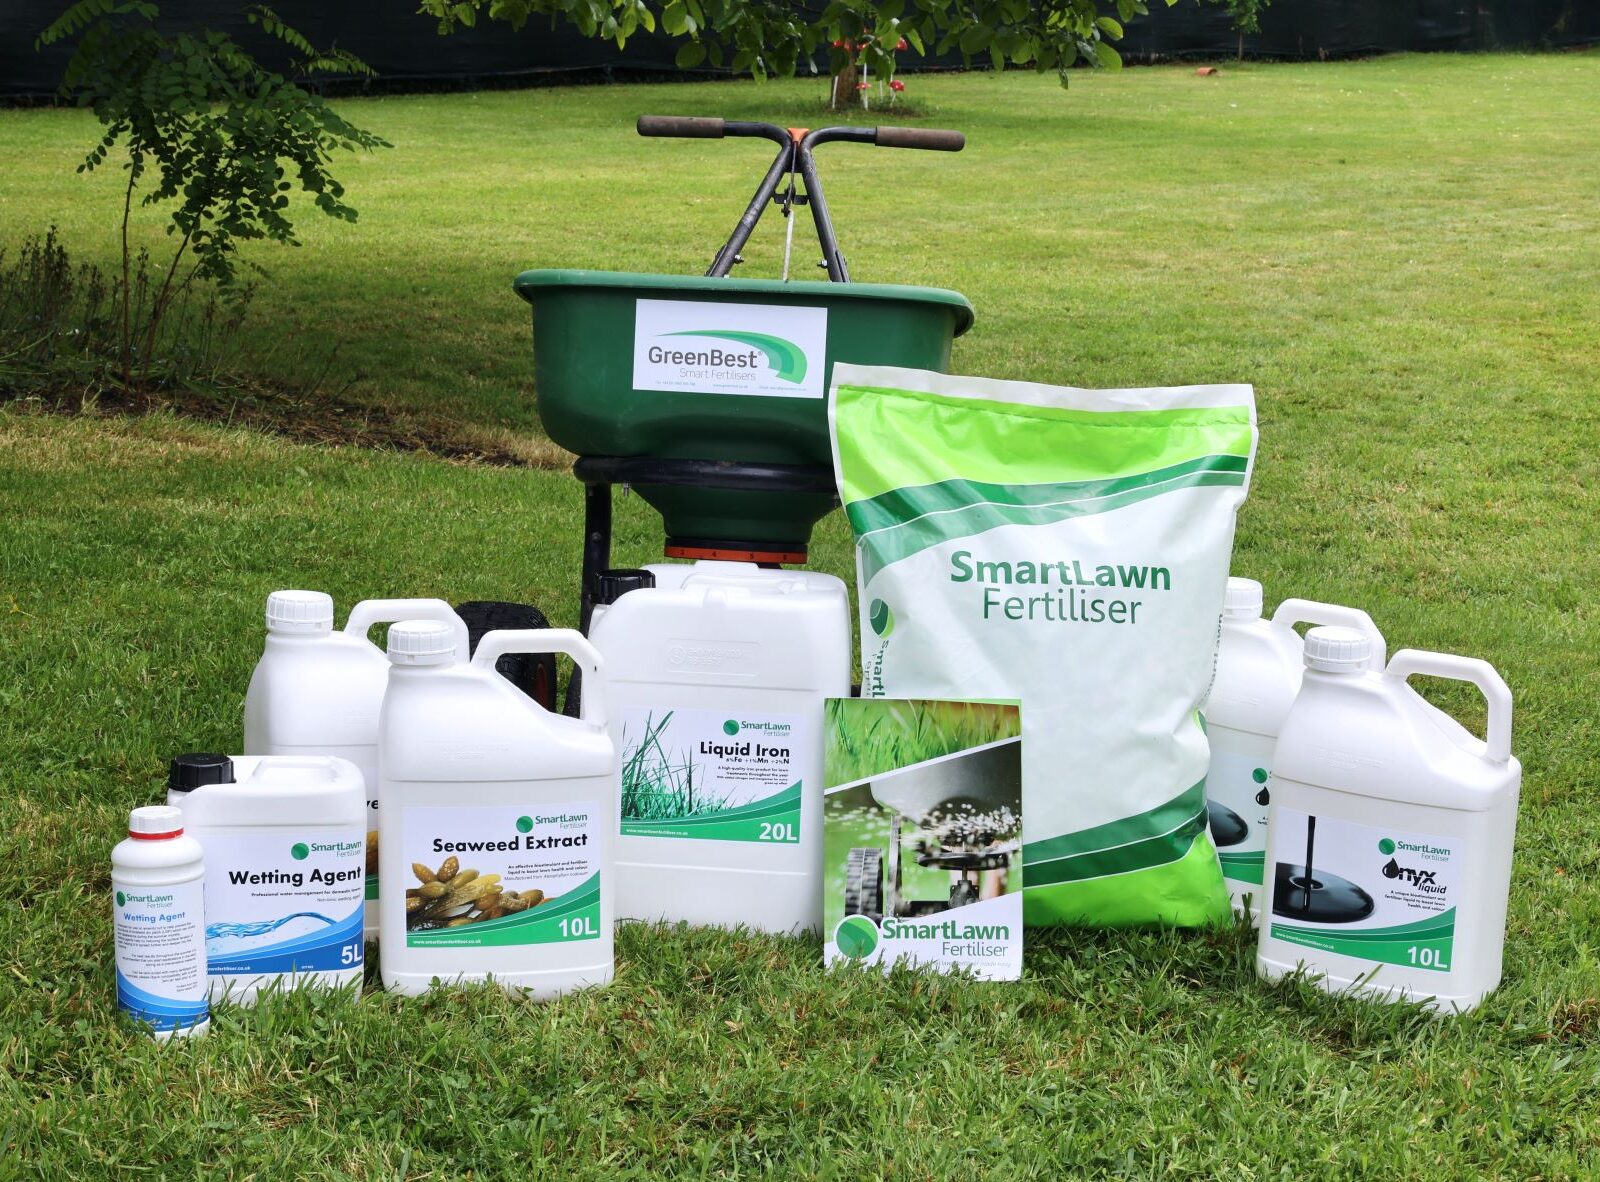 SmartLawn Fertiliser products on a lawn with a fertiliser spreader